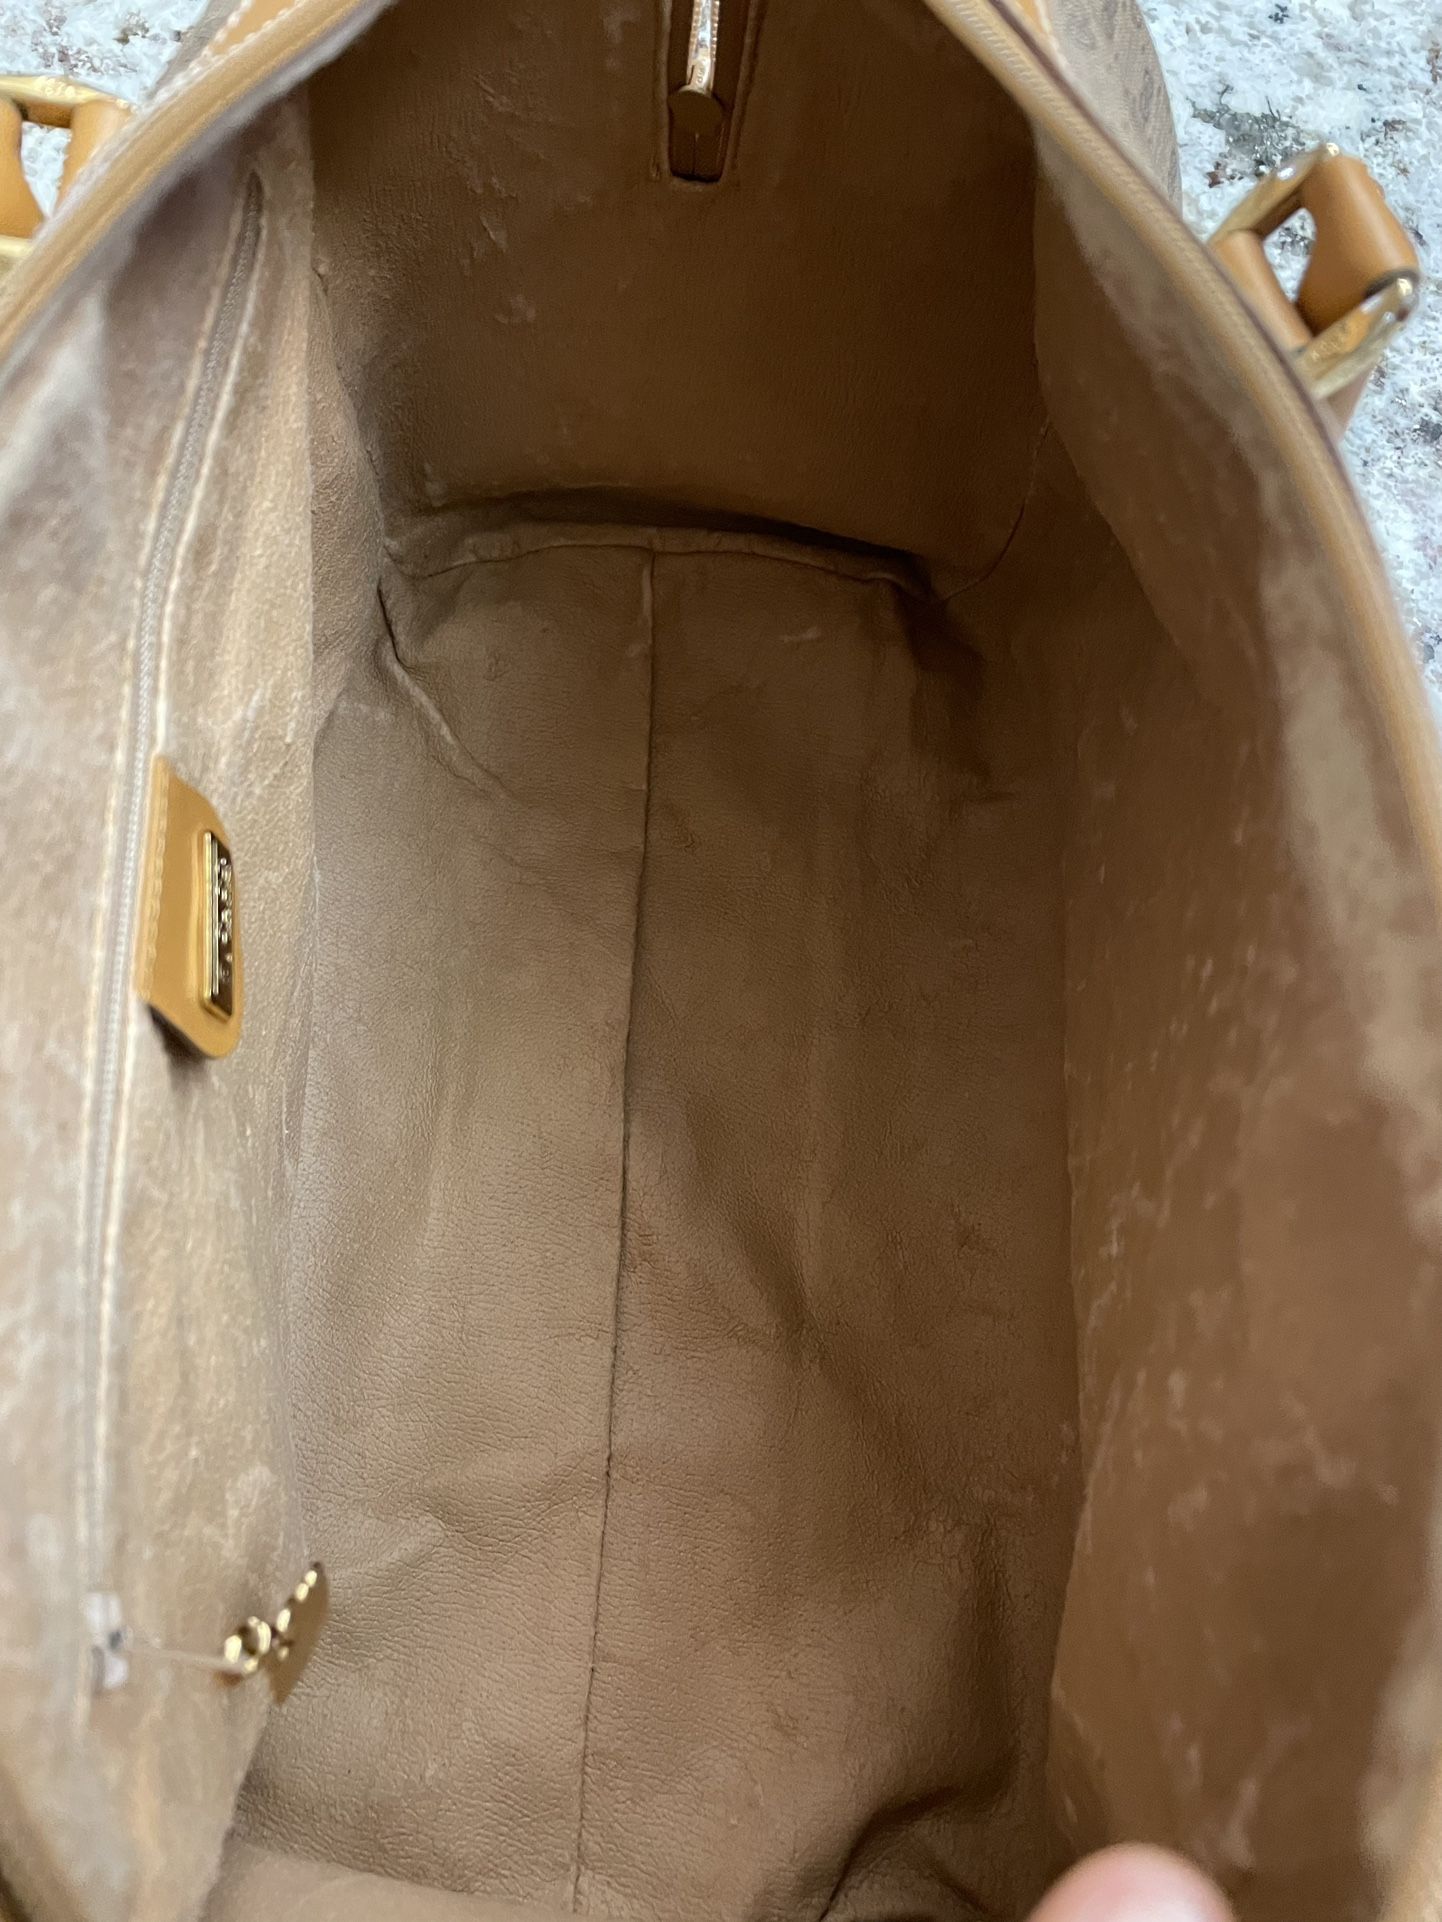 Vintage Gucci boston Web Bag for Sale in Shoreline, WA - OfferUp